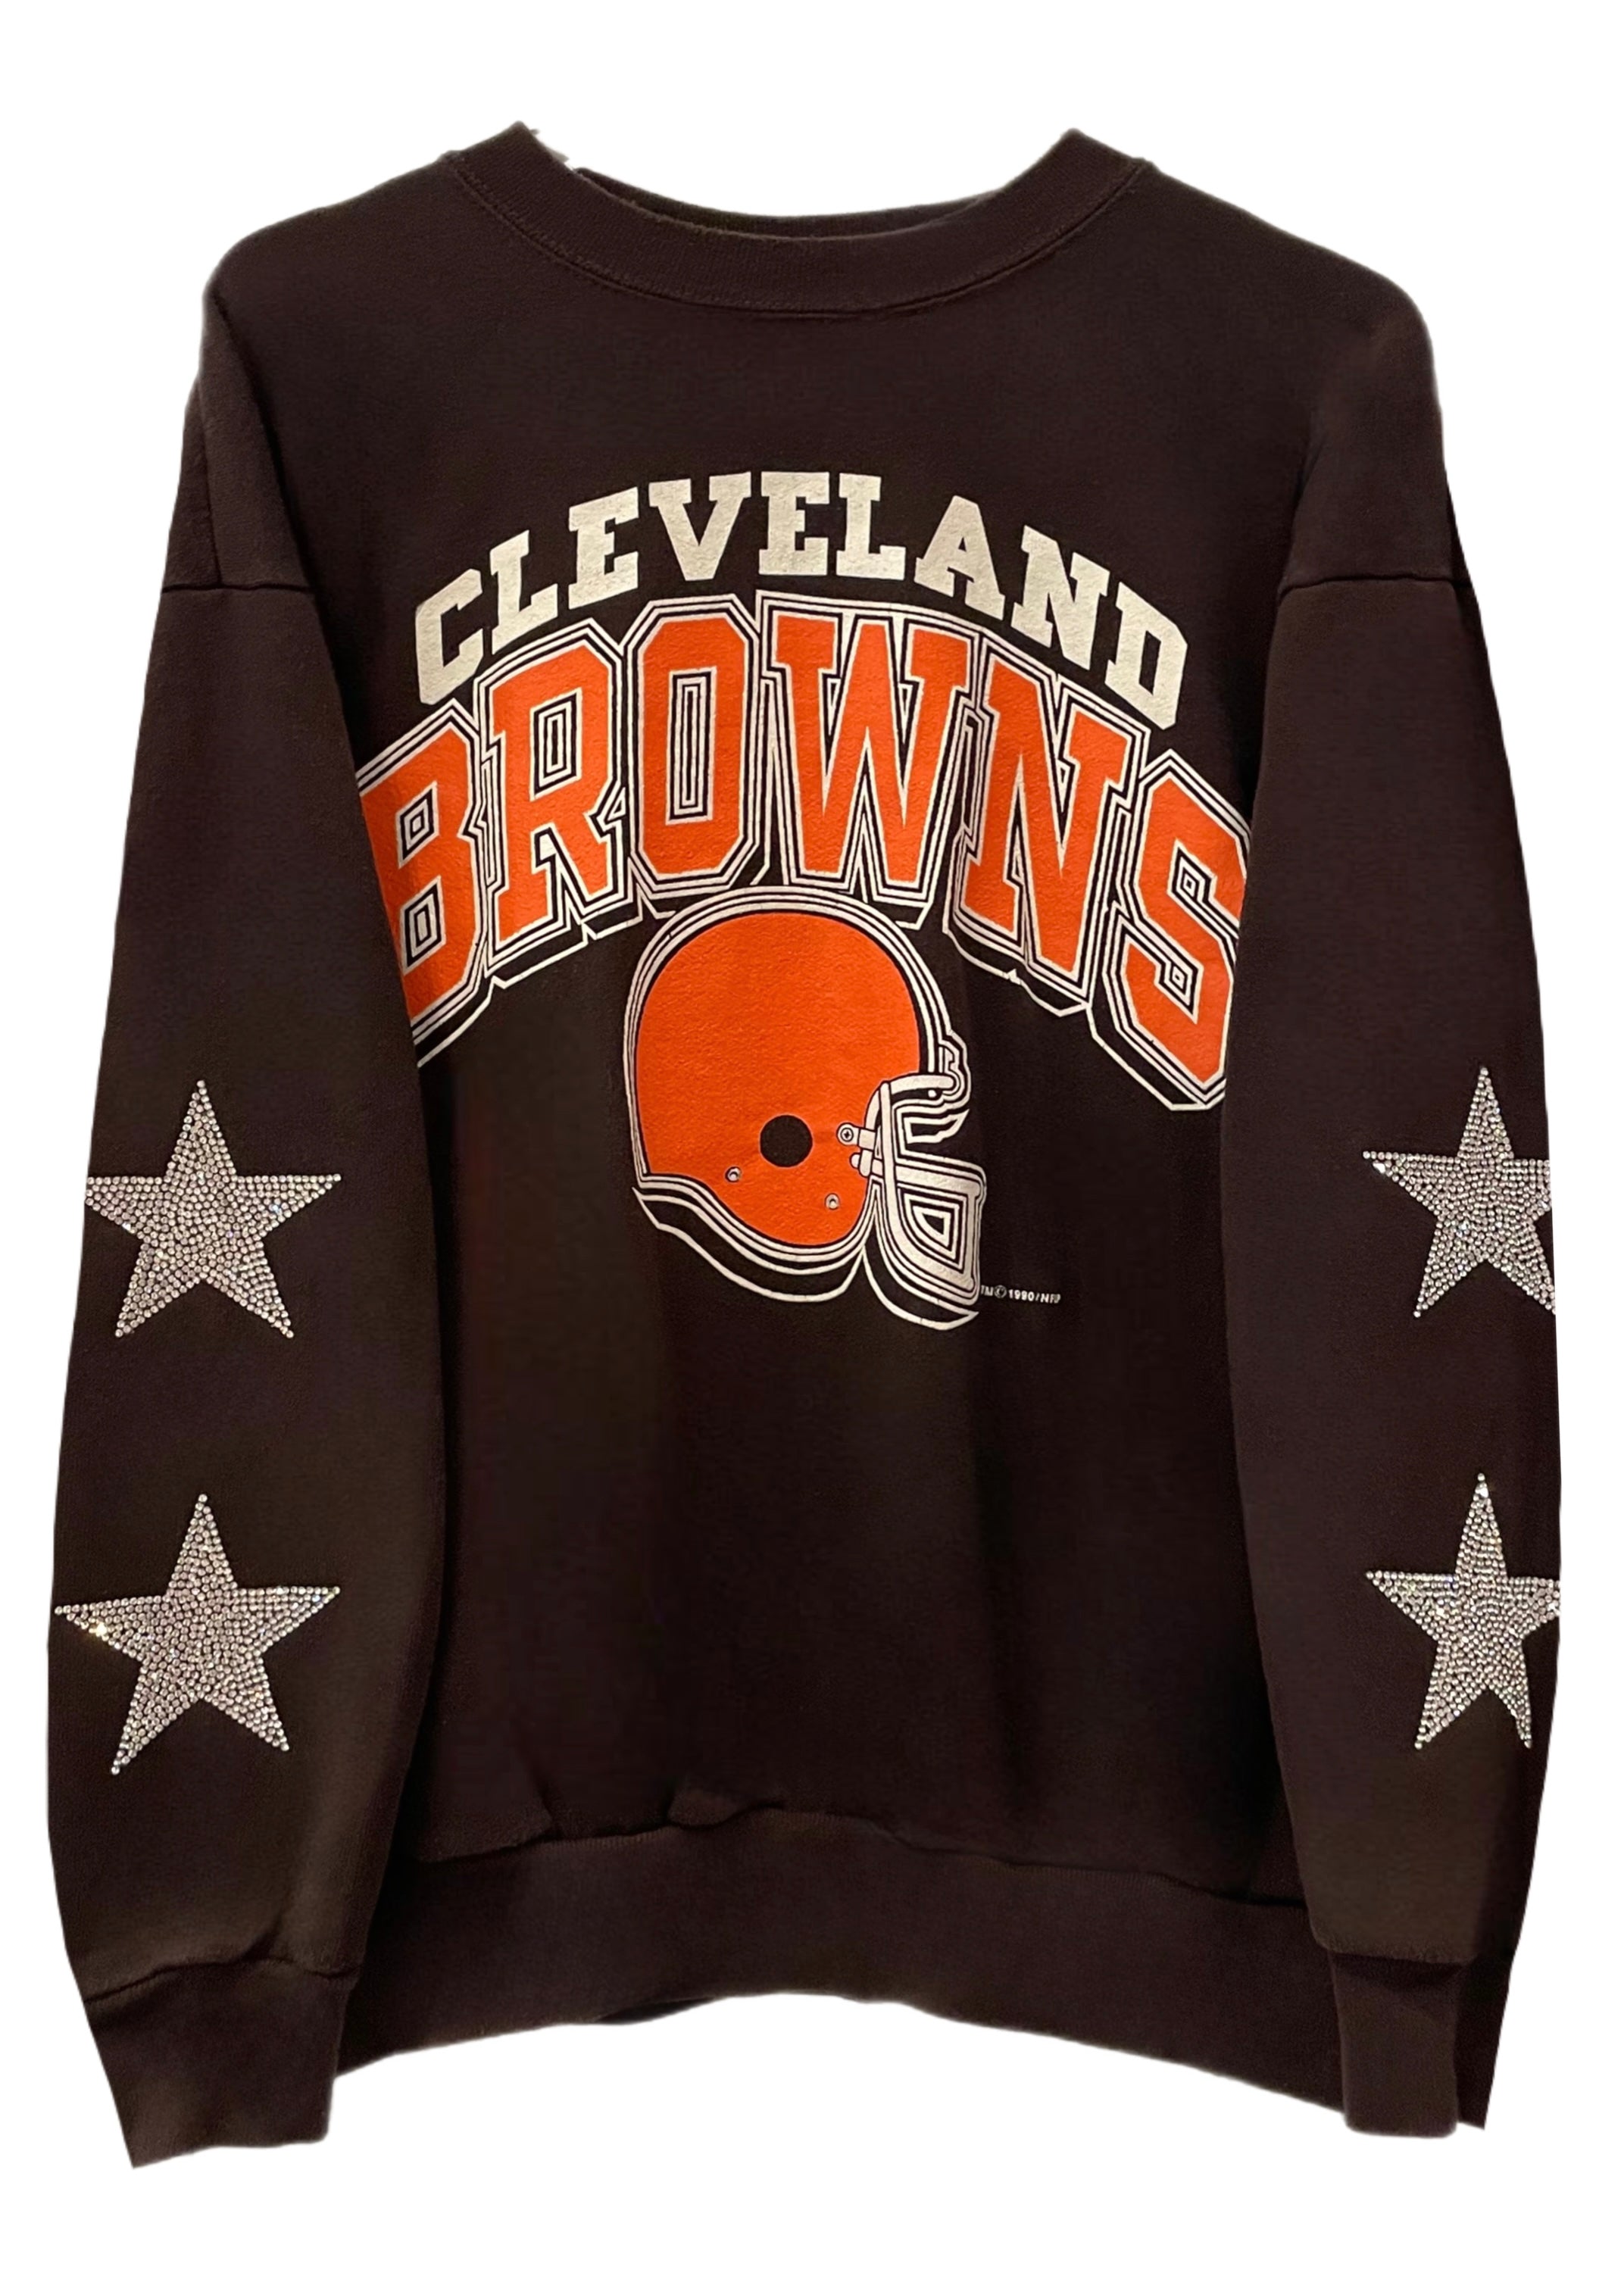 cleveland browns retro sweatshirt